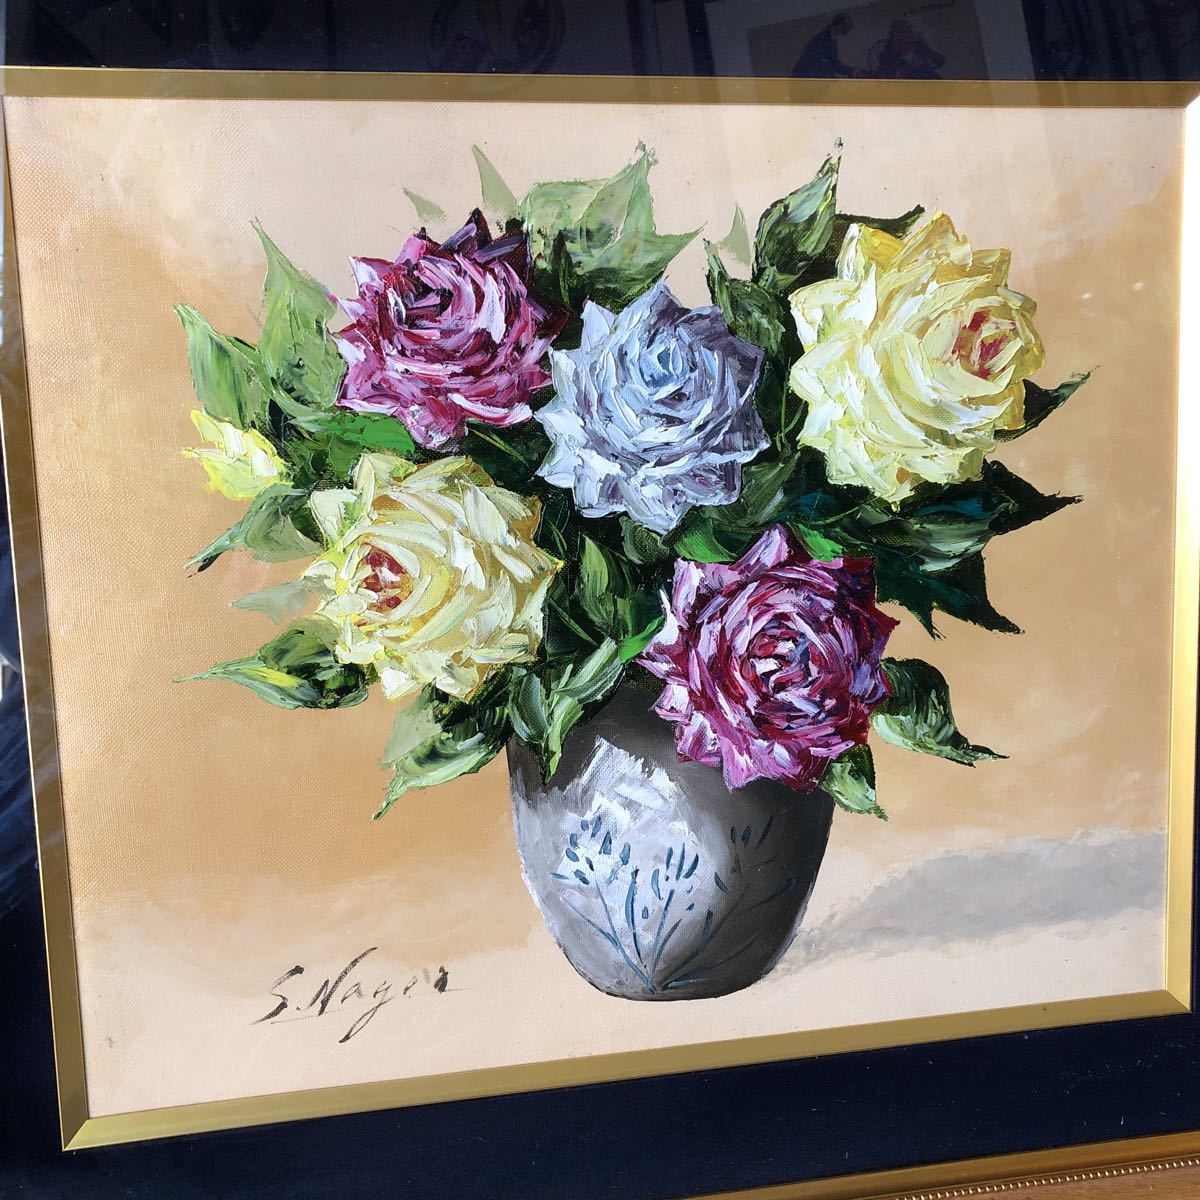 لوحة زيتية لتوشيو ناجاو لوحة الورد تاريخ غير معروف لأولئك الذين يحبون الزهور, تلوين, طلاء زيتي, طبيعة, رسم مناظر طبيعية